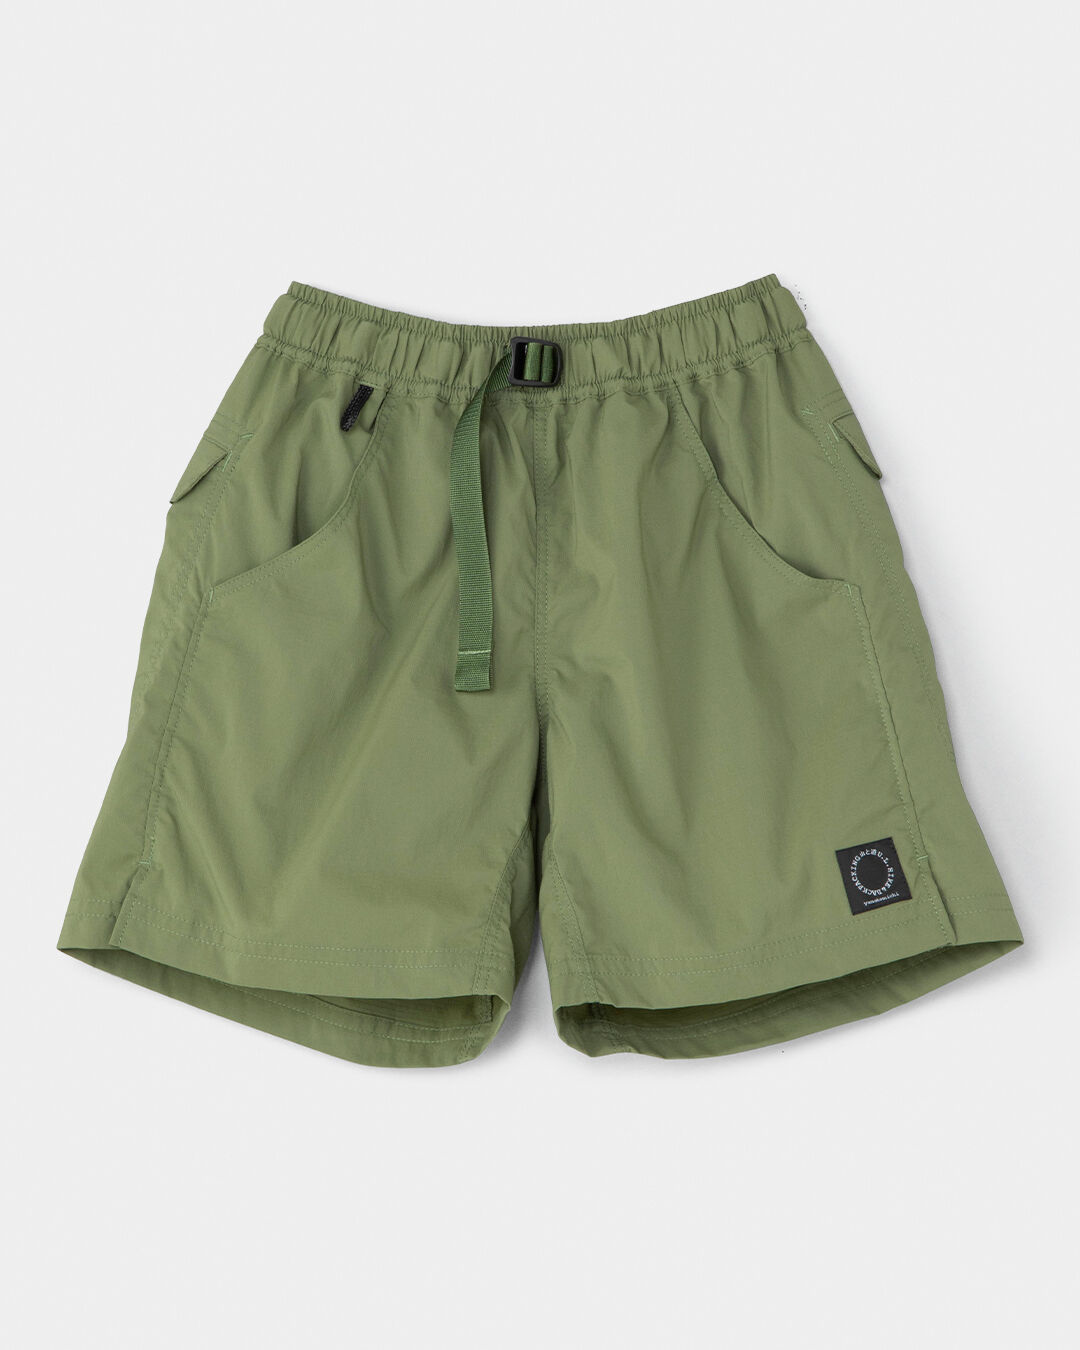 新品 山と道 DW 5-Pocket Shorts メンズM Greenパンツ